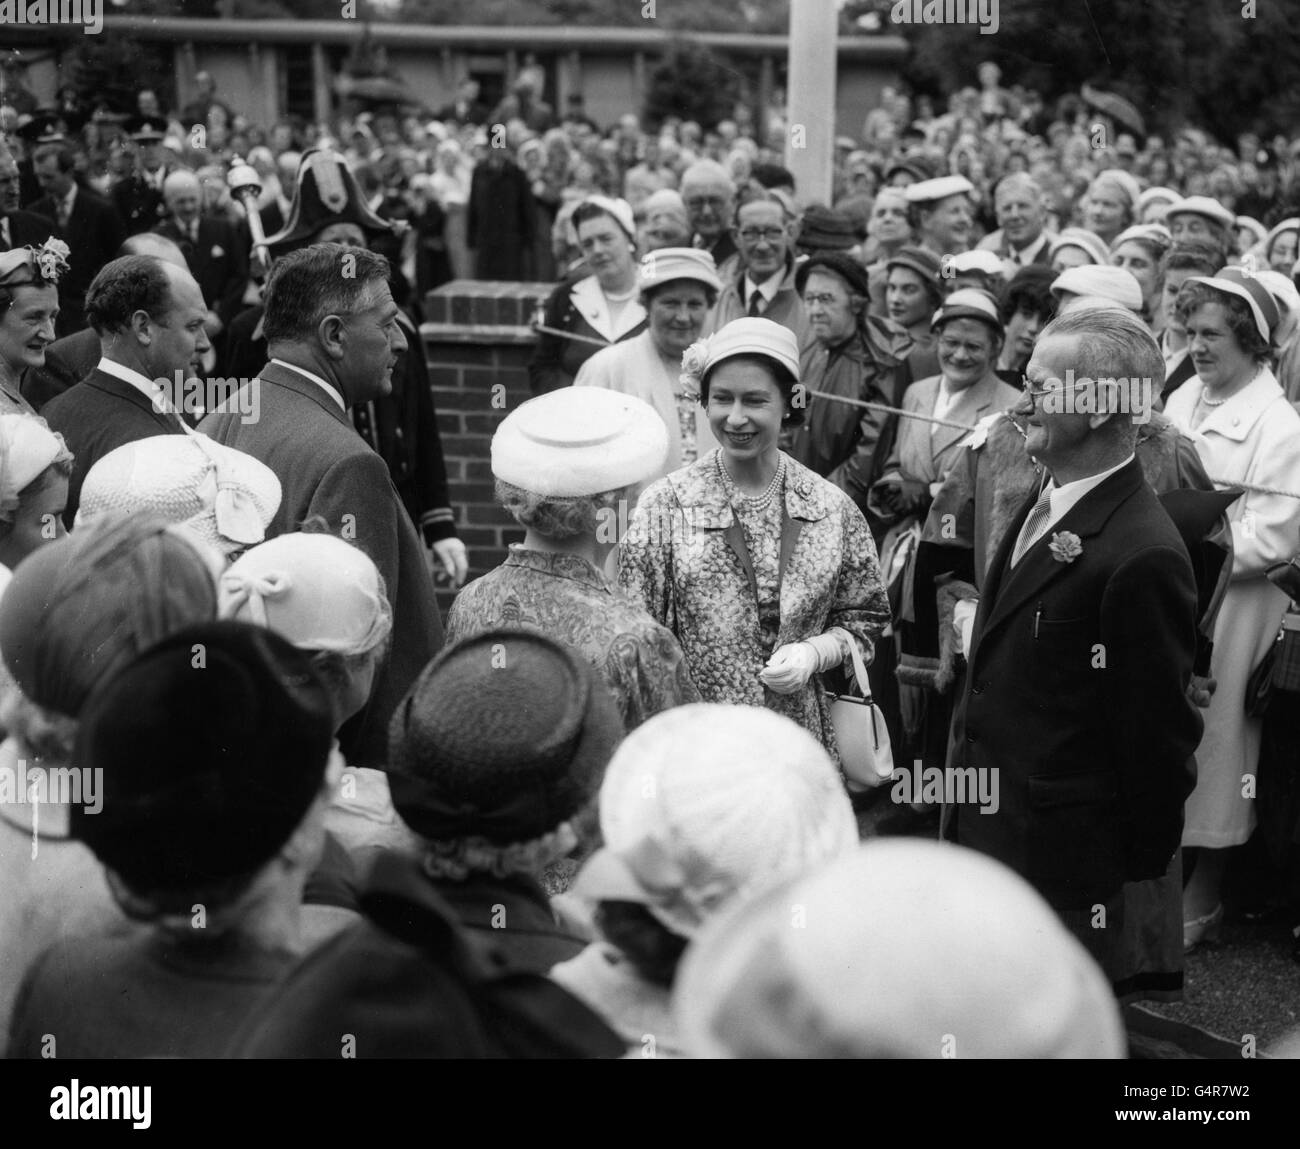 Königin Elizabeth II. Kommt an, um die King George VI Memorial Hall für alte Menschen in Windsor zu öffnen. Stockfoto